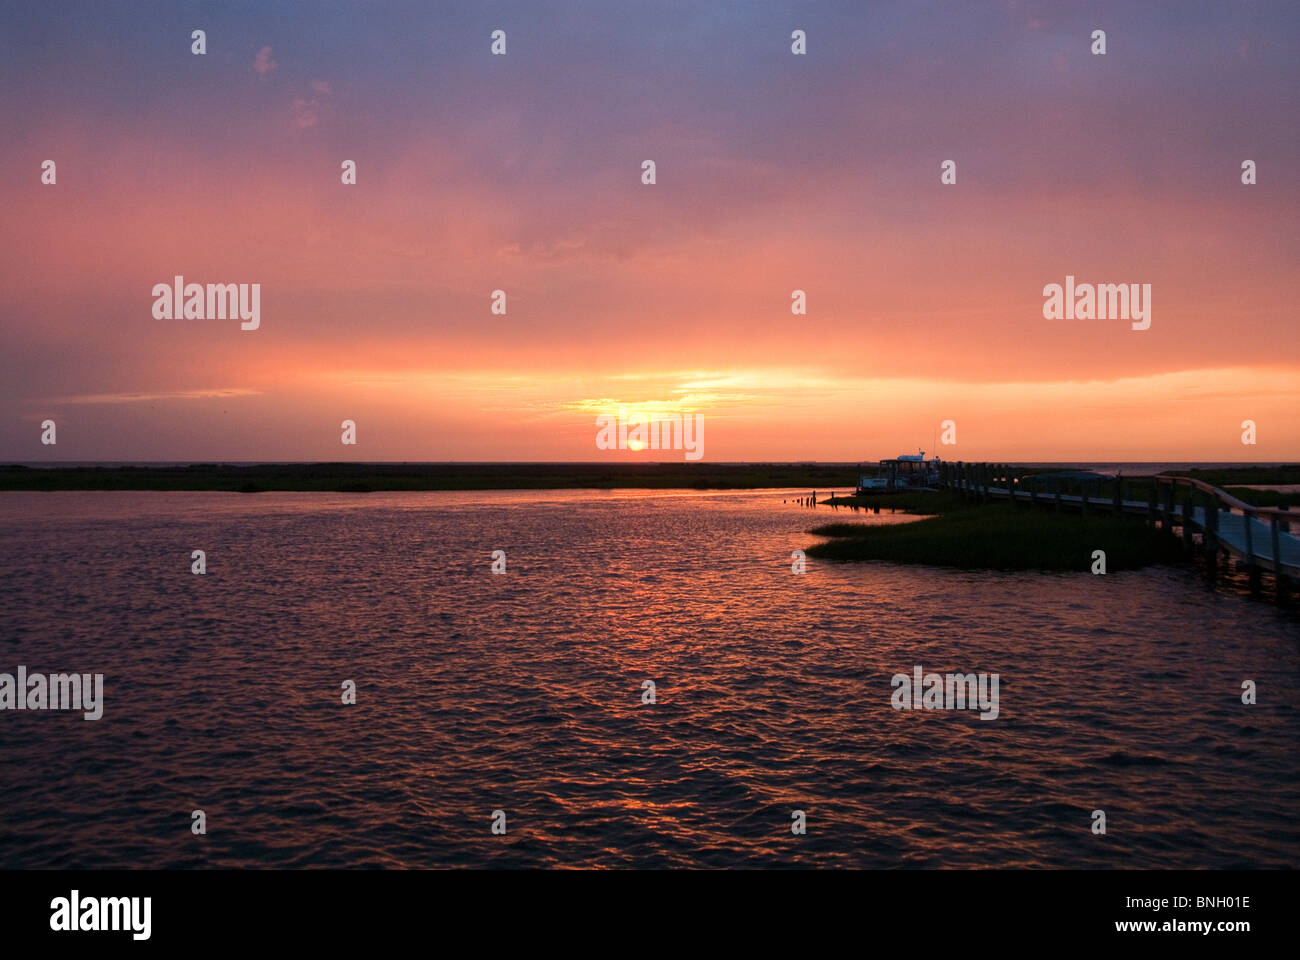 Chesapeake Bay at sunset Stock Photo